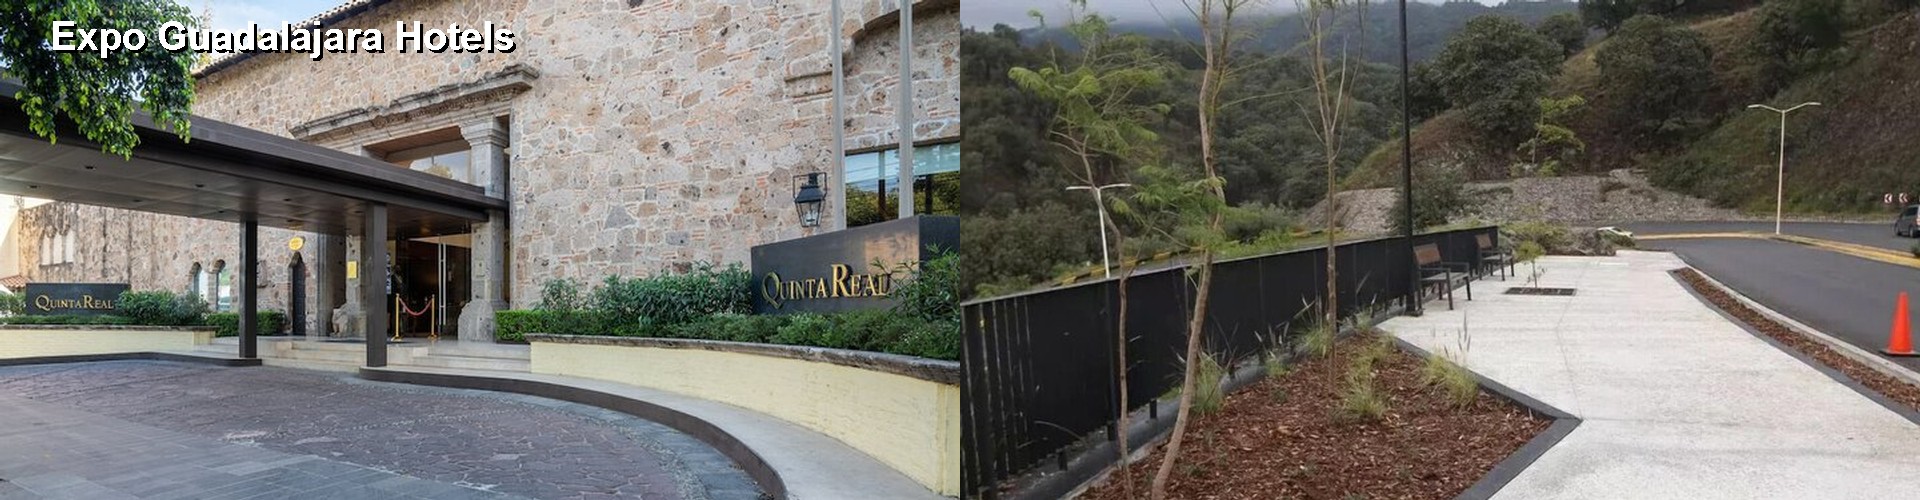 5 Best Hotels near Expo Guadalajara